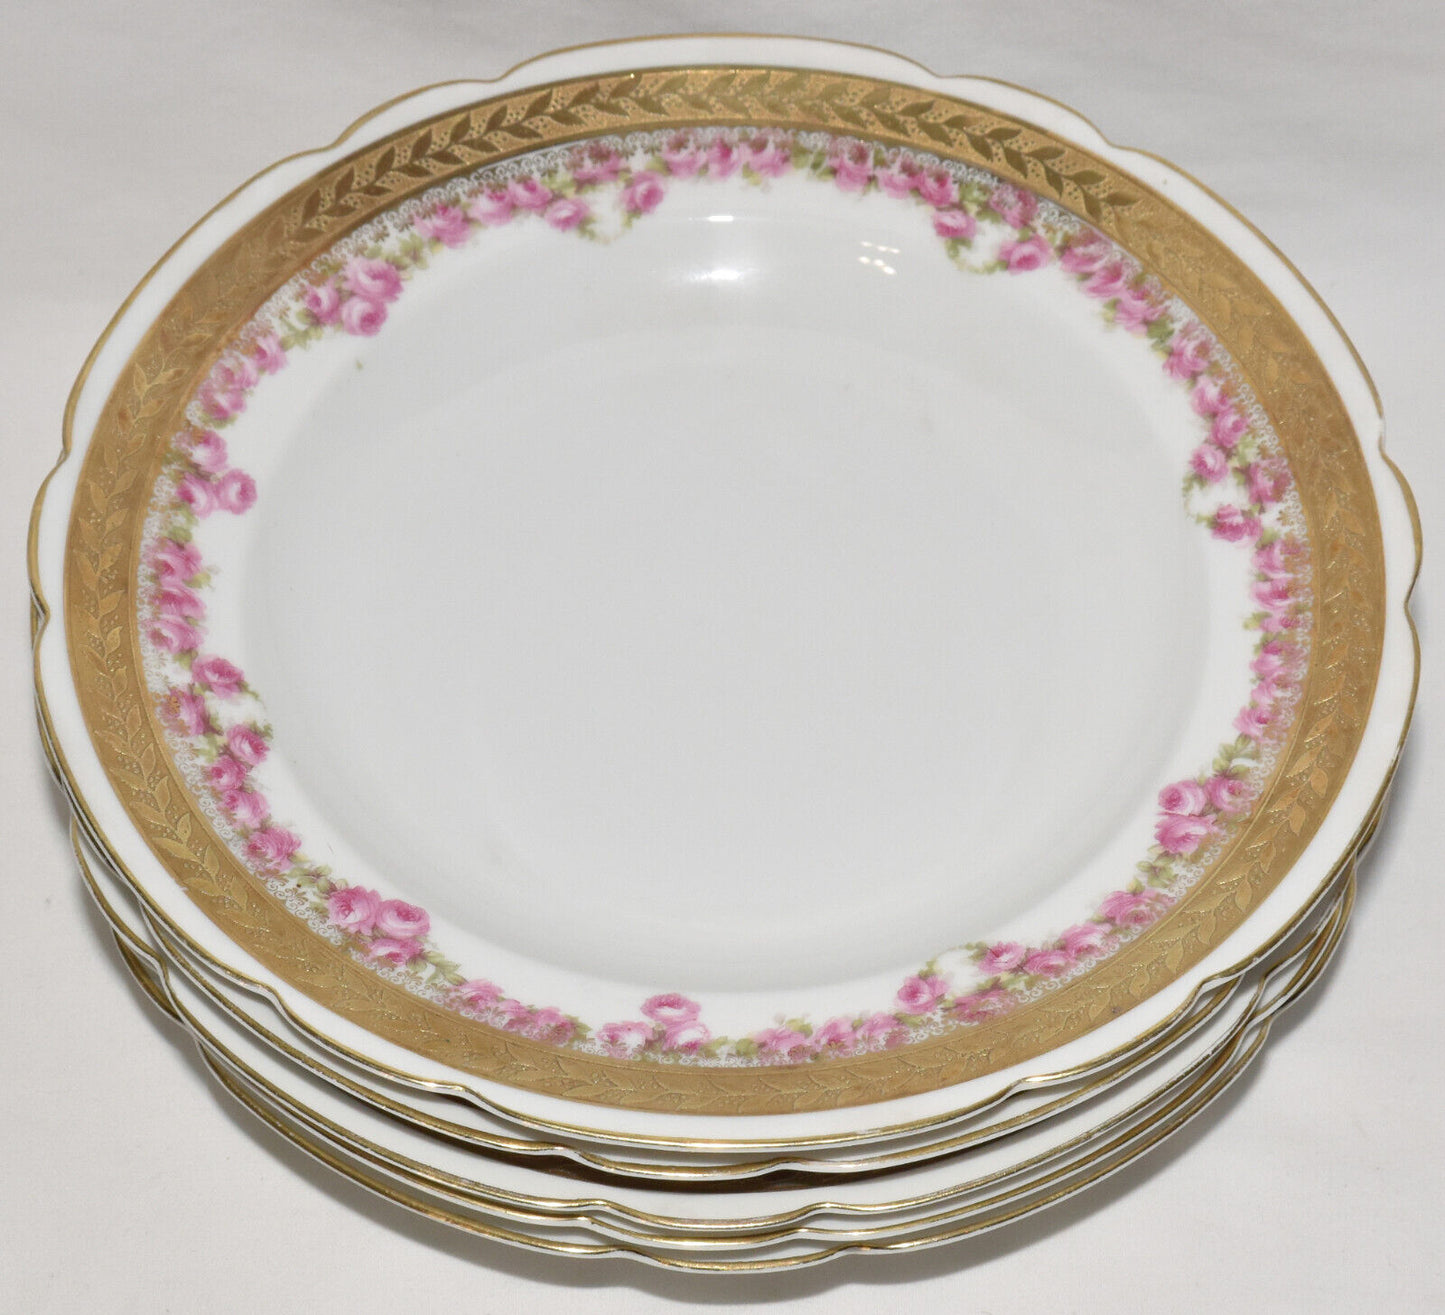 Antique Royal Bayreuth Bavaria Porcelain Bowls 5 Lrg 9" Salad Bowls Pink Flowers